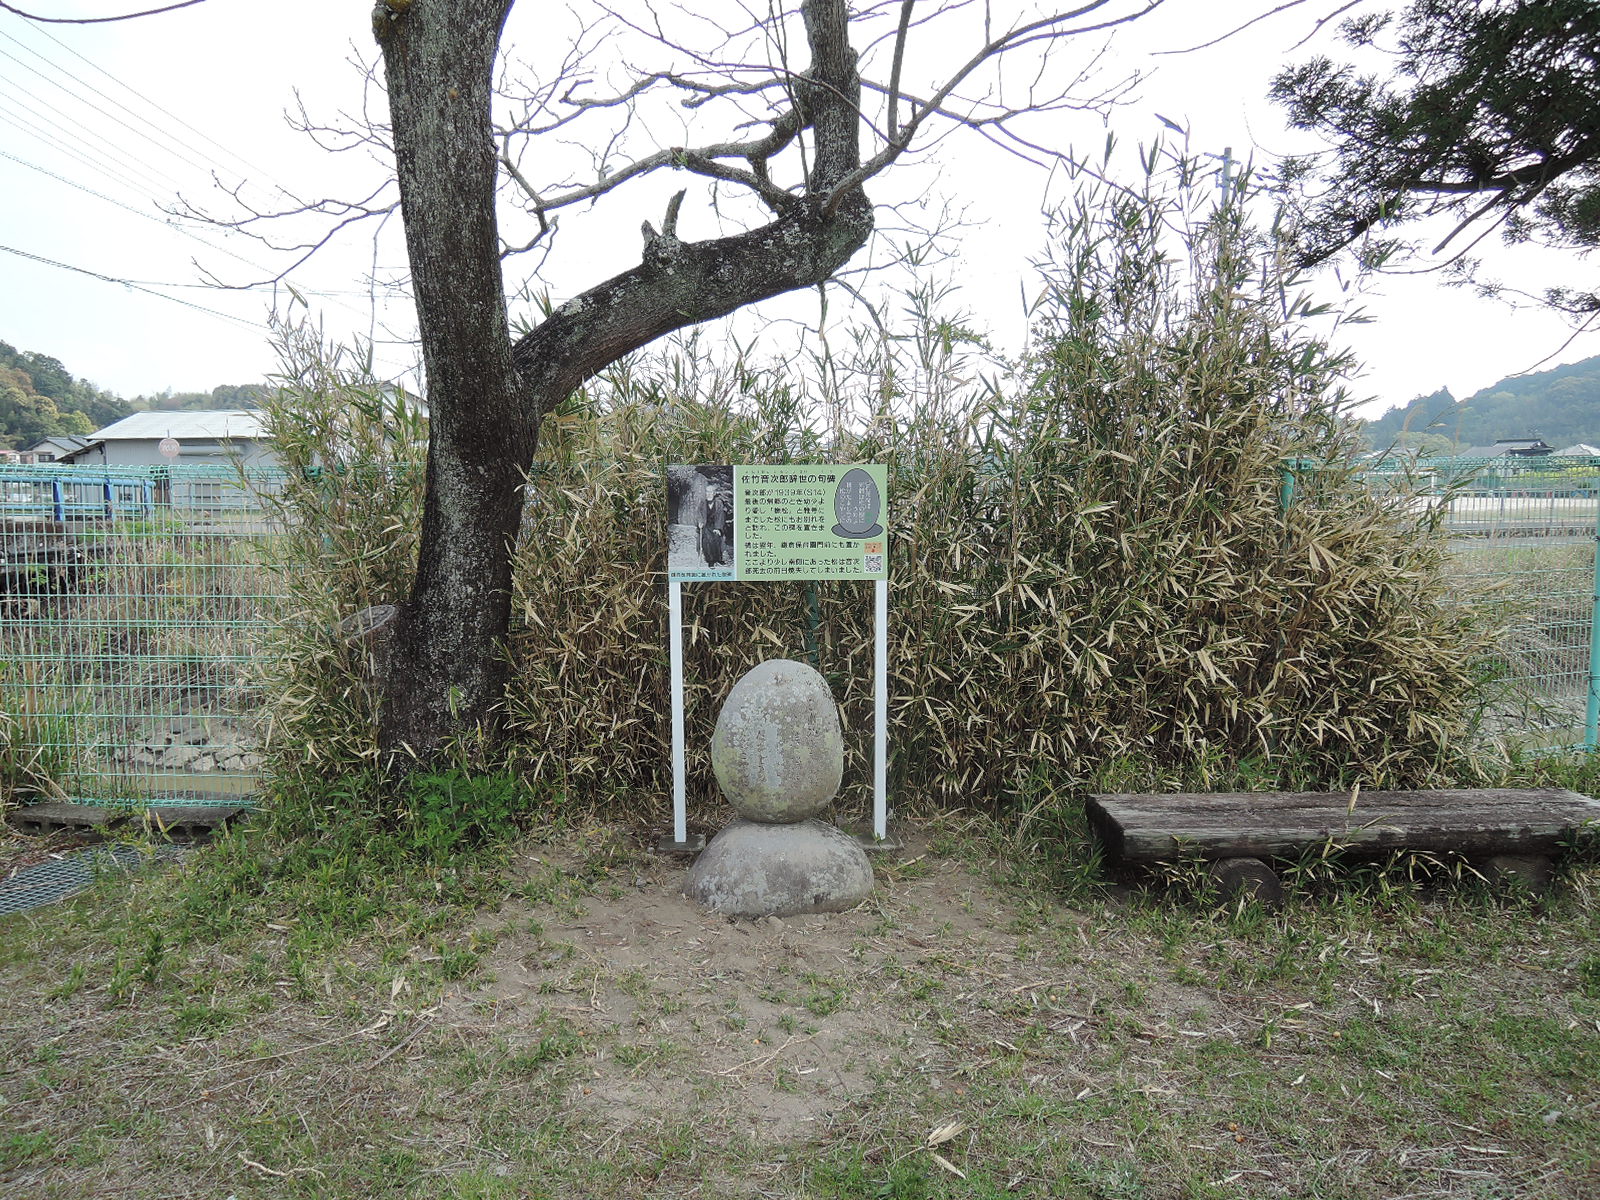 竹島集会所の川沿いフェンス前、左に栴檀の木、背後に笹林、右には丸太風ベンチ。緑字に説明文と鎌倉の歌碑の写真が入った案内板。